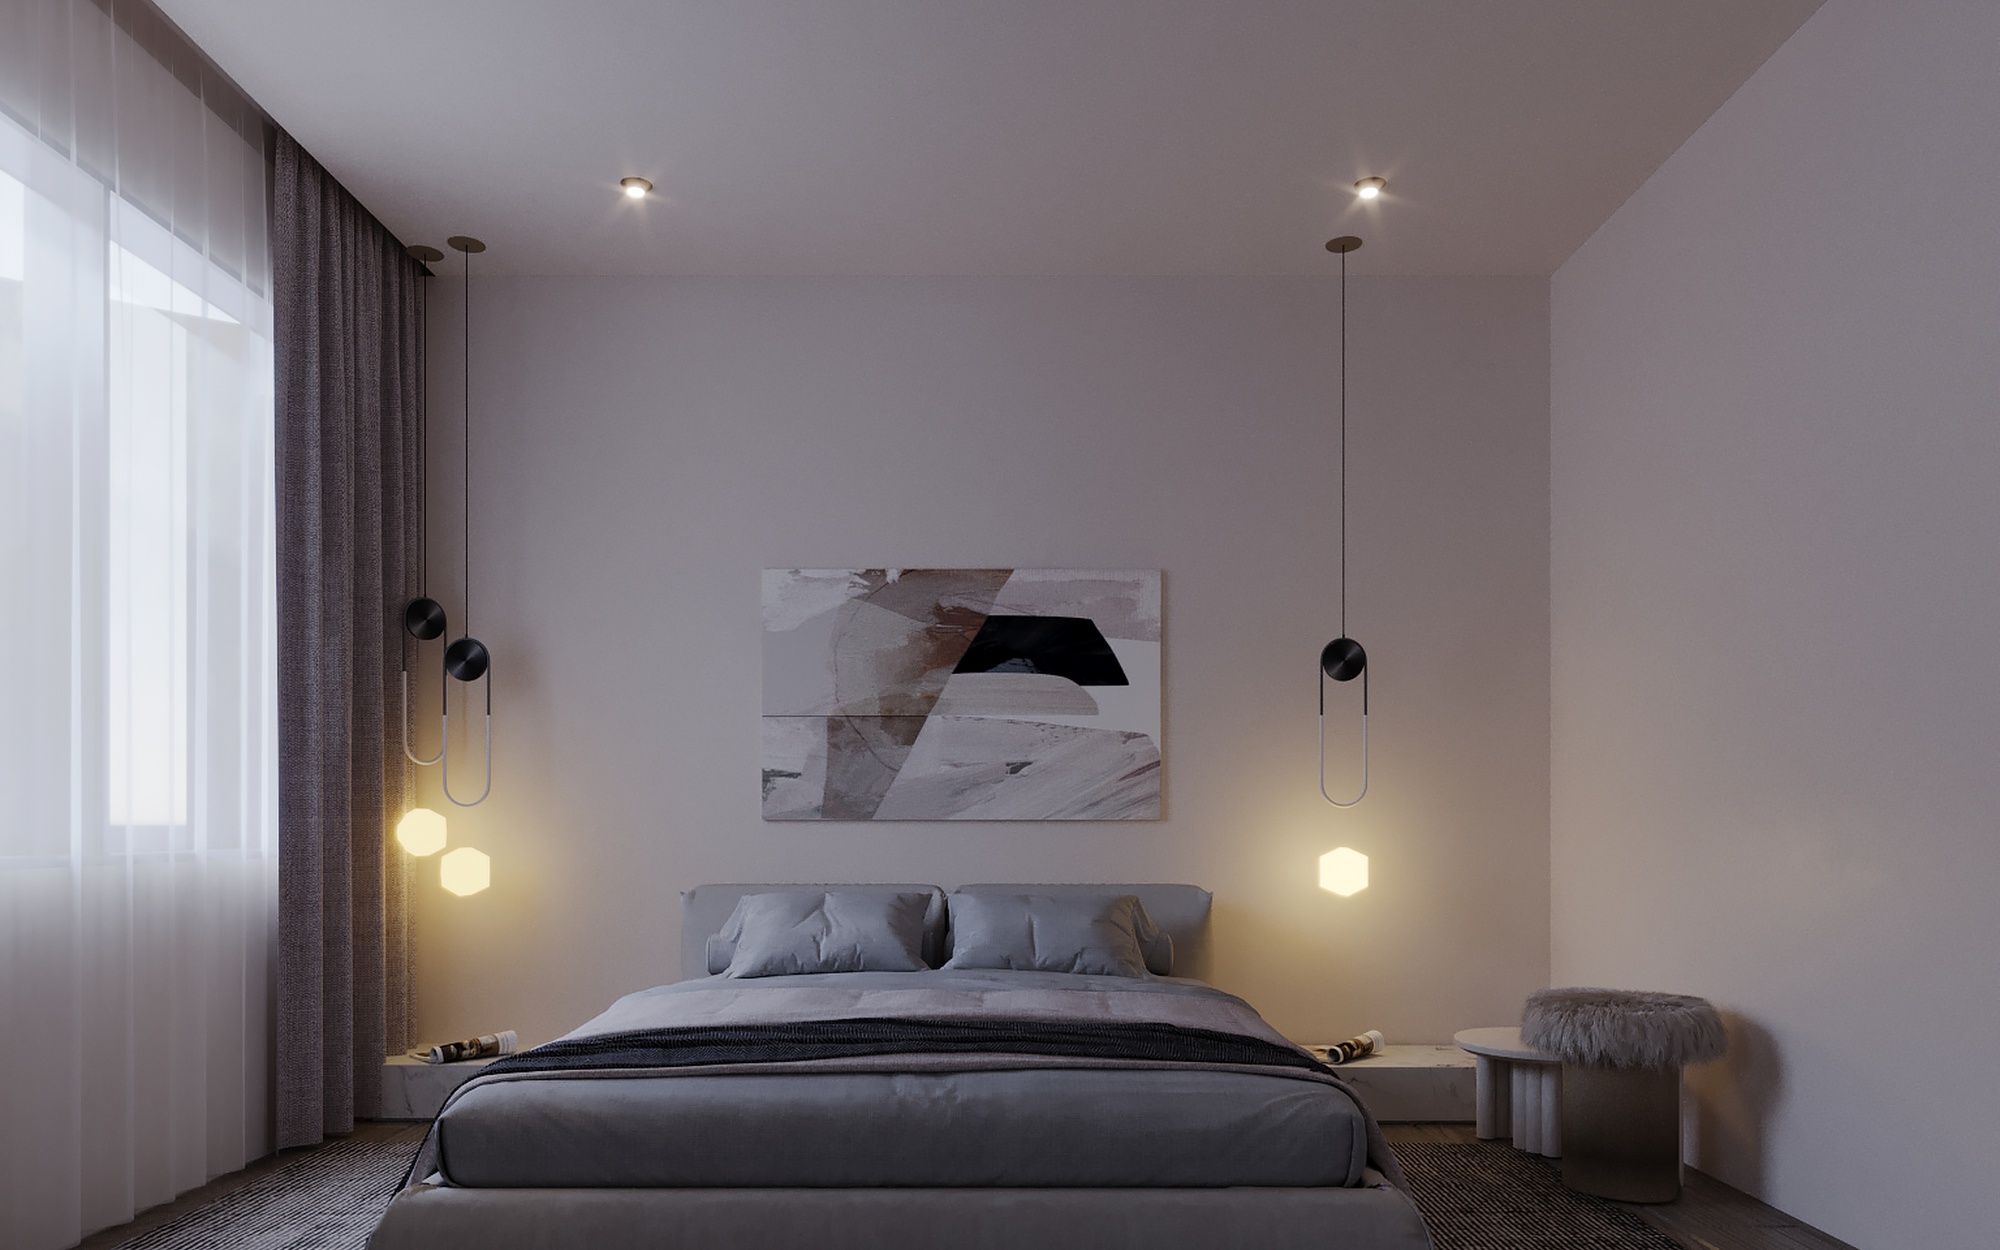 Das Schlafzimmer bietet Platz für ein Kingsize-Bett. Grosse Fenster öffnen den Blick auf die Umgebung, während minimalistische Möbel und neutrale Farbpaletten eine beruhigende Atmosphäre schaffen.